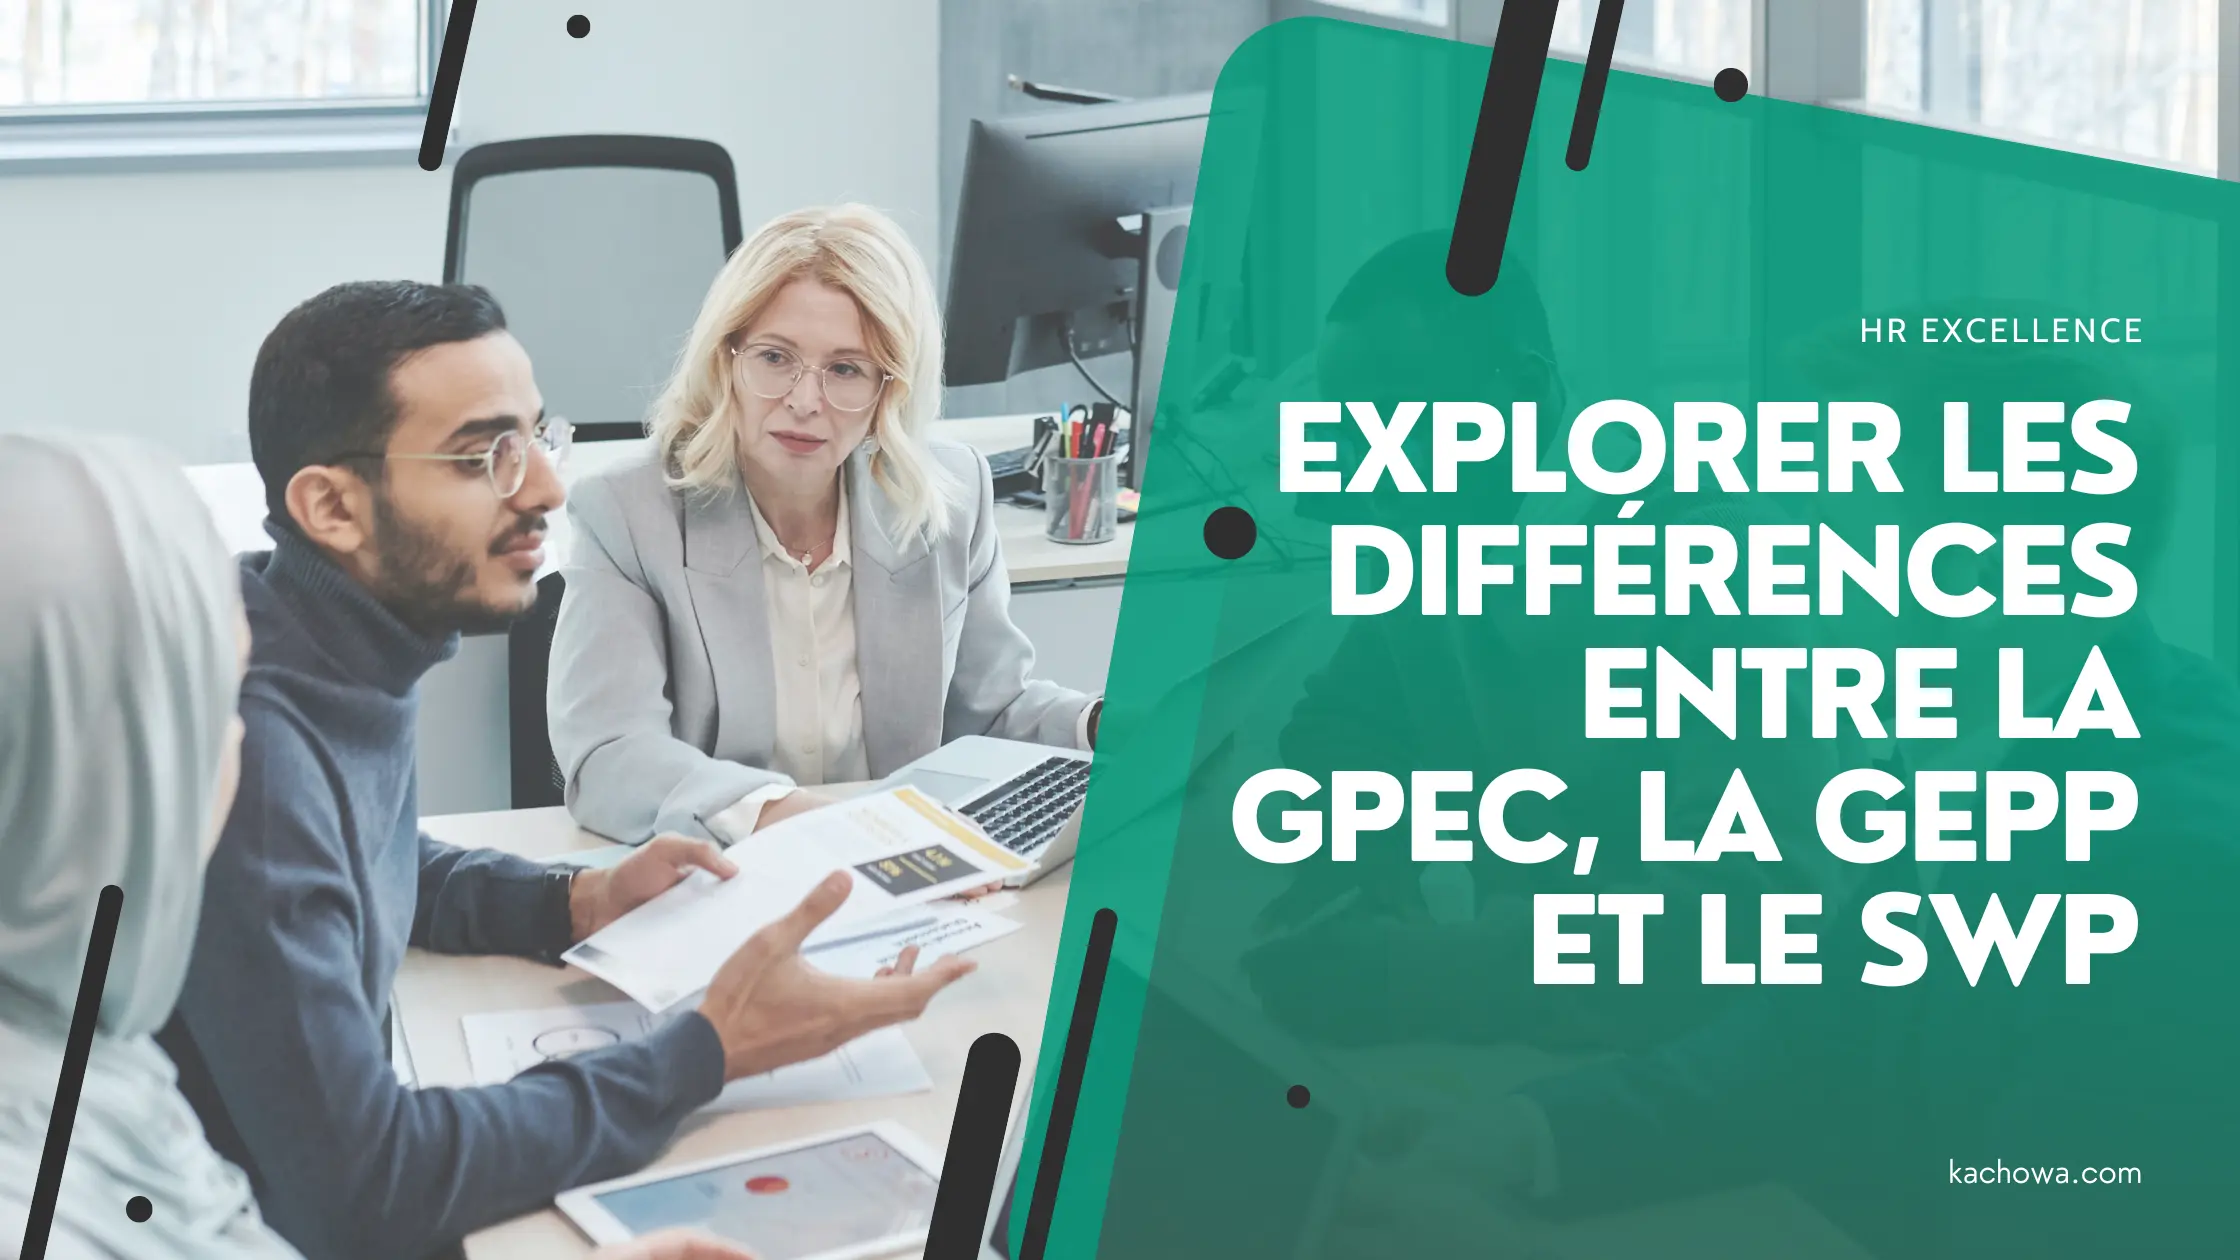 Explorer les différences entre la GPEC, la GEPP et le SWP